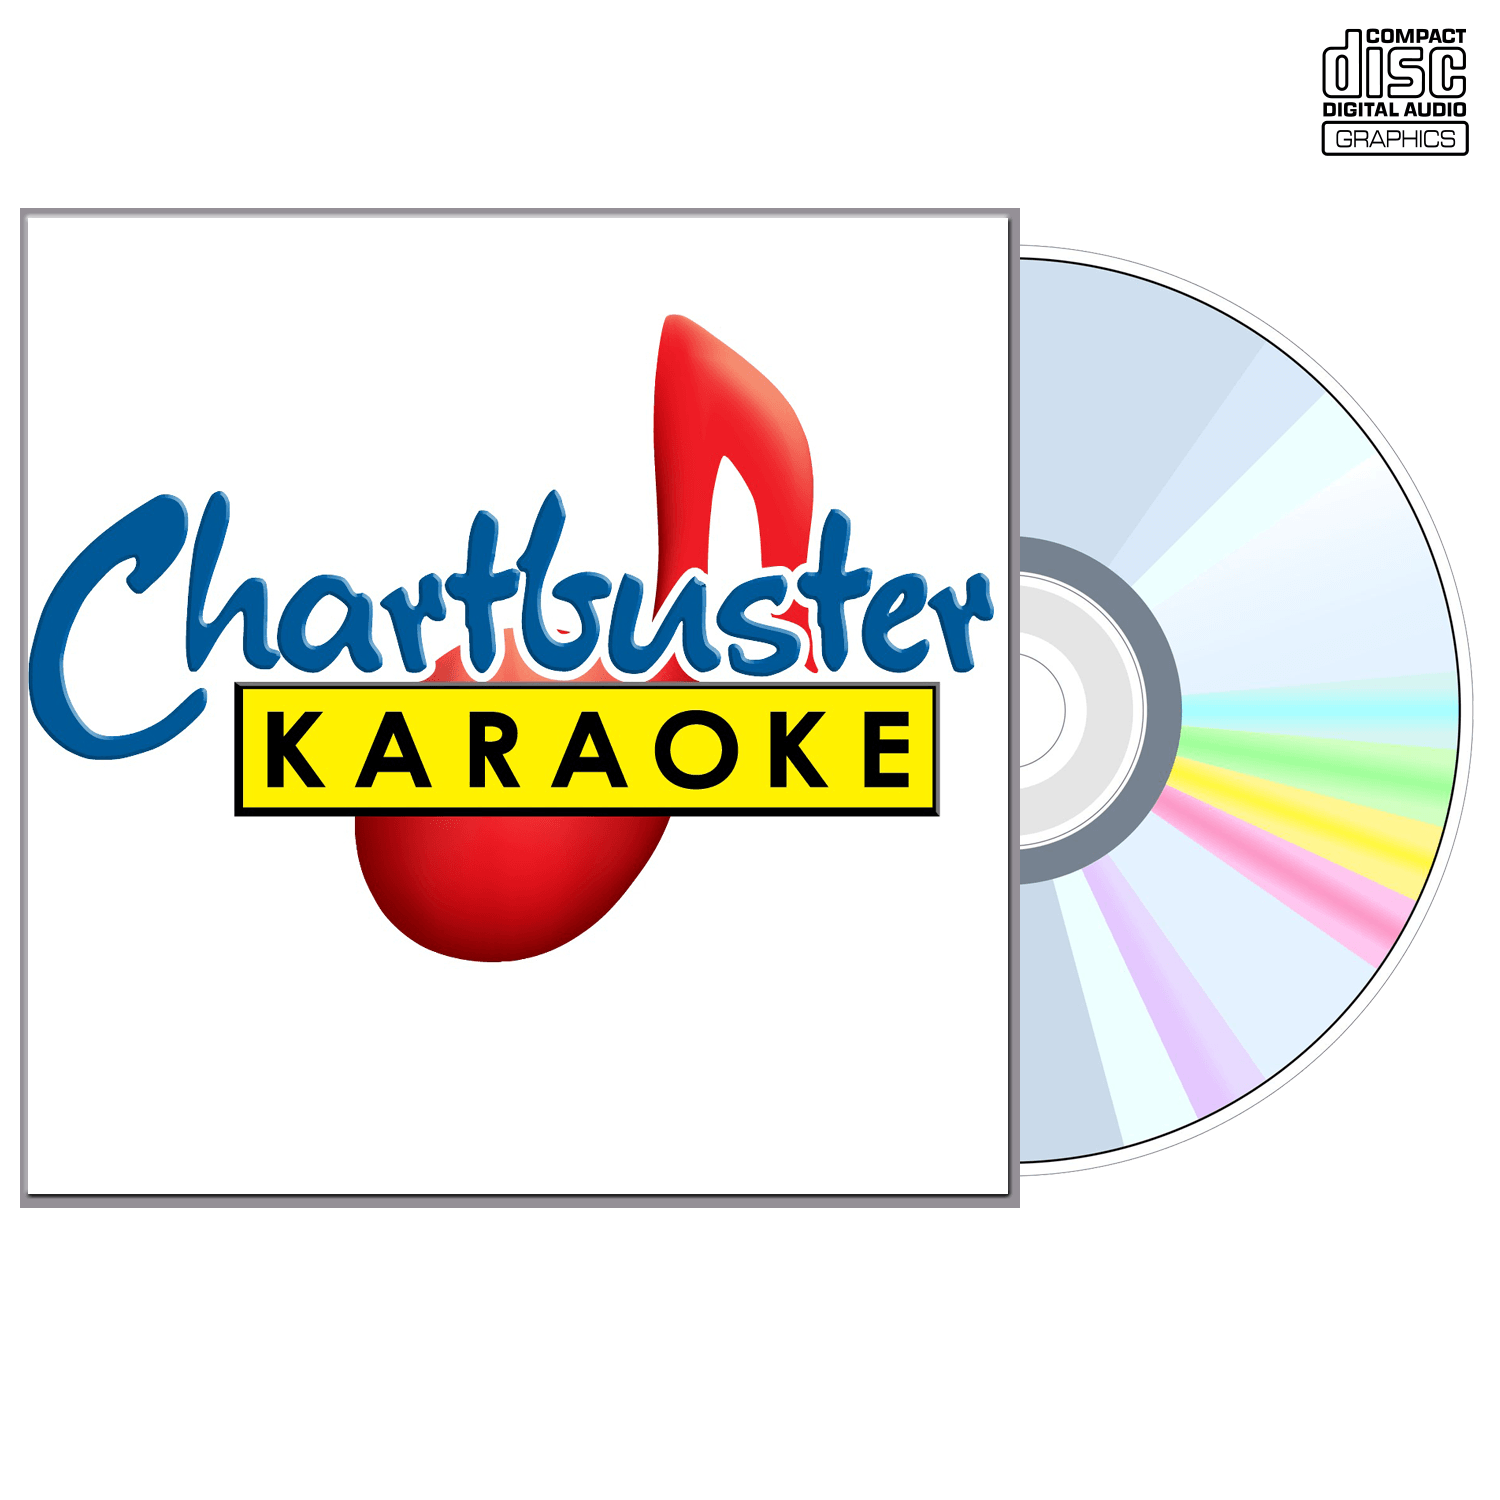 The Coasters - CD+G - Chartbuster Karaoke - Karaoke Home Entertainment